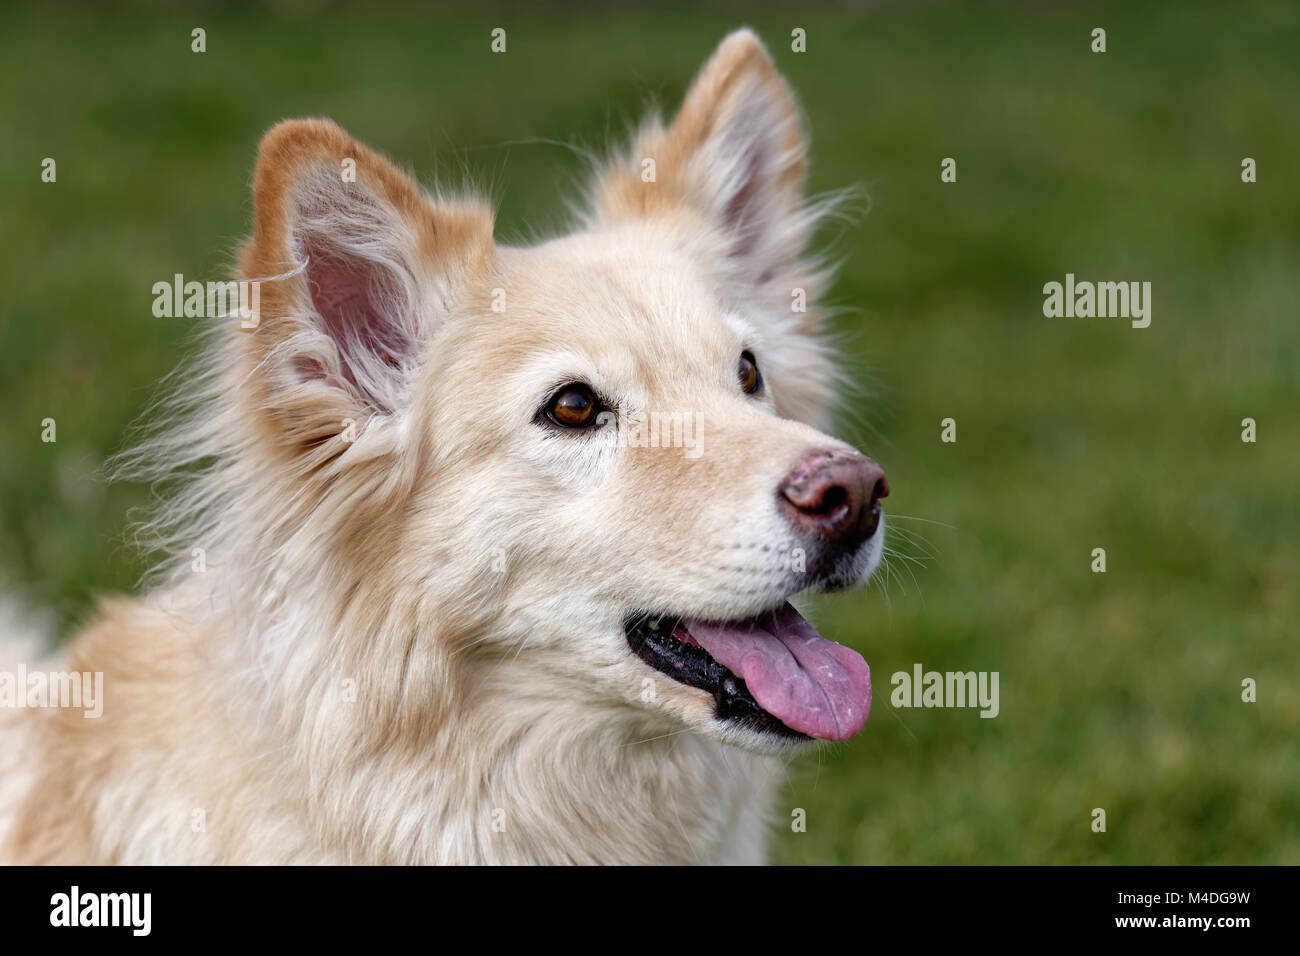 Gespeichert spanisch Hund Stockfotografie - Alamy